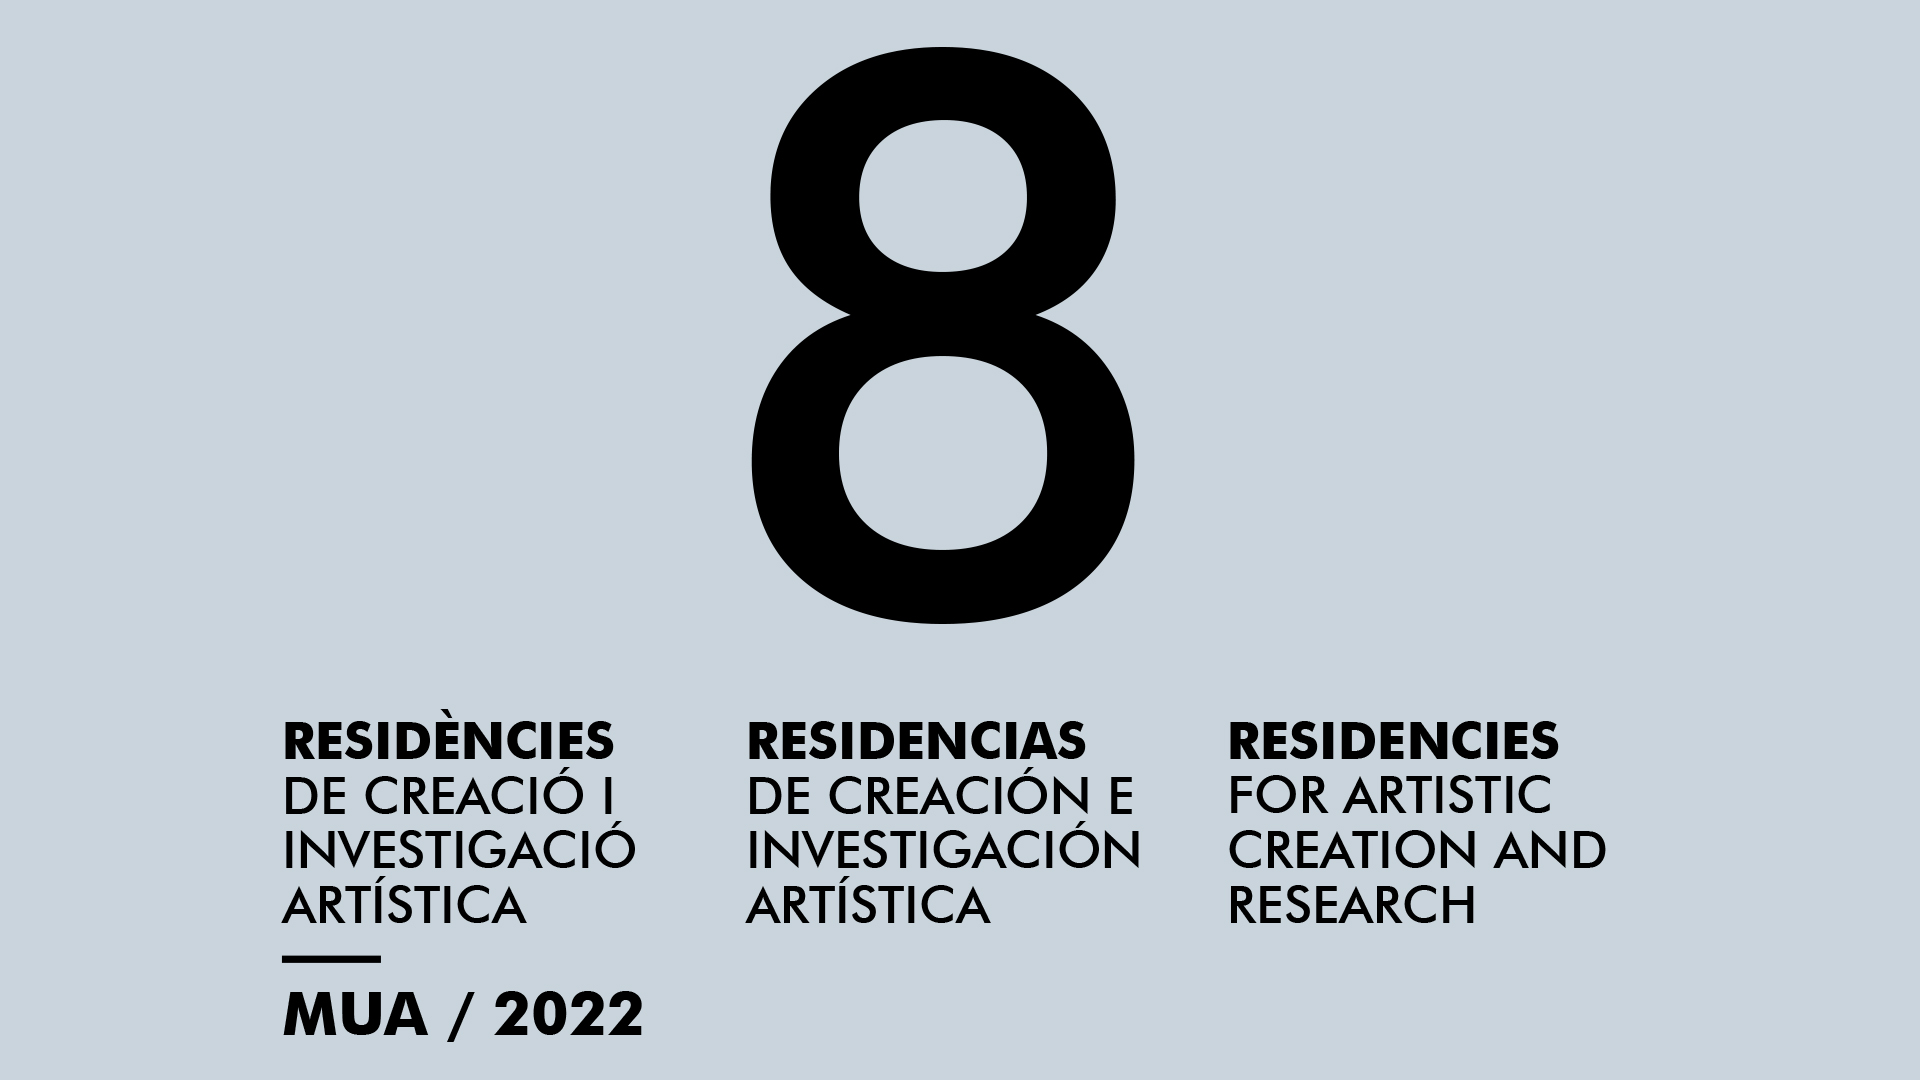 SELECTED 8 RESIDENCIAS DE CREACIÓN E INVESTIGACIÓN ARTÍSTICA